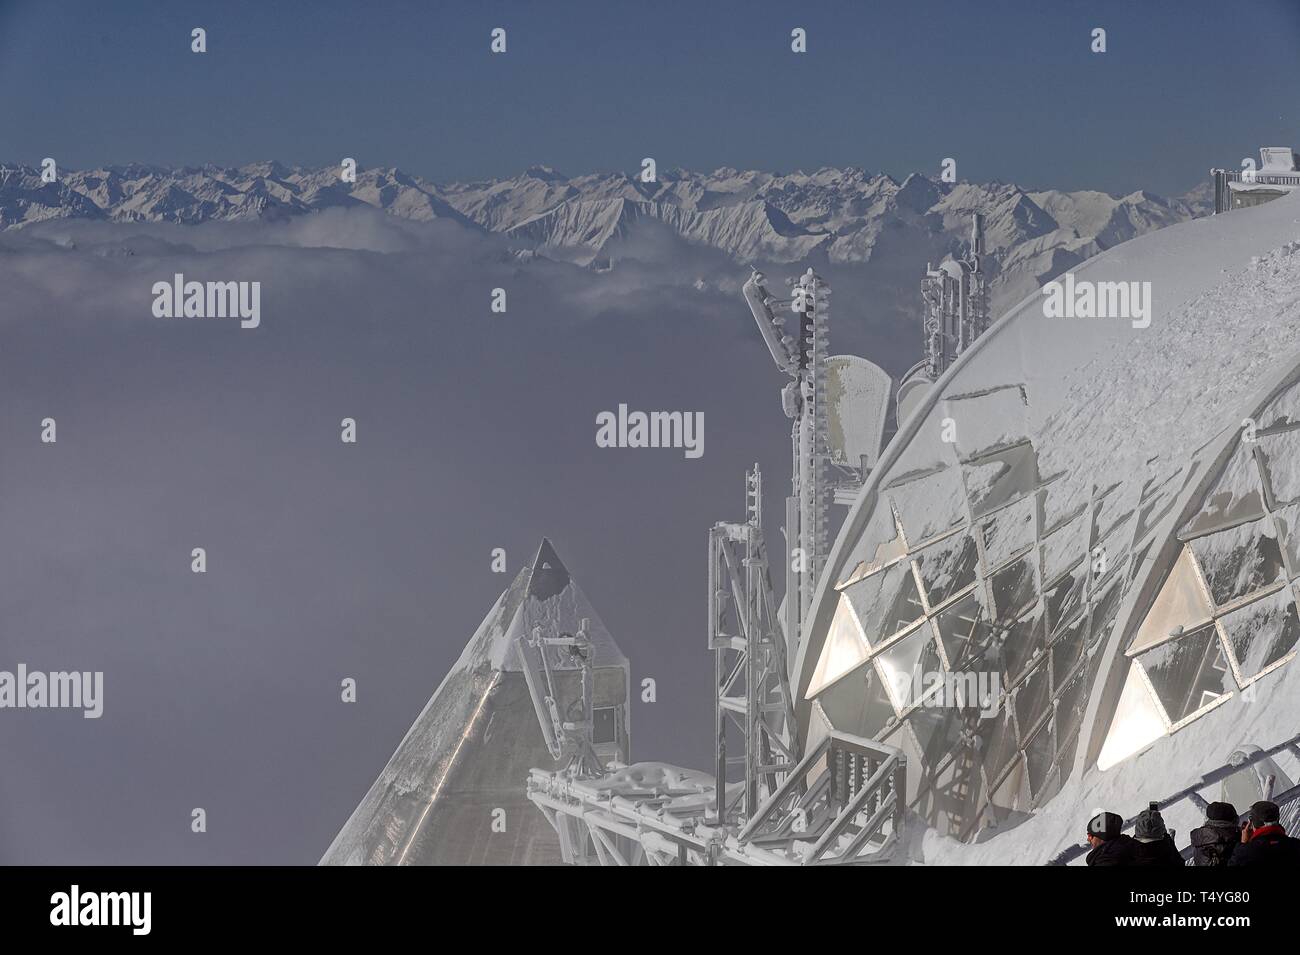 Zugspitze: Winterliches Alpen-Panorama, Im Vordergrund die Glaskuppel der Seilbahn Bergstation. Klare Sicht bei wolkenlosem Himmel Stock Photo